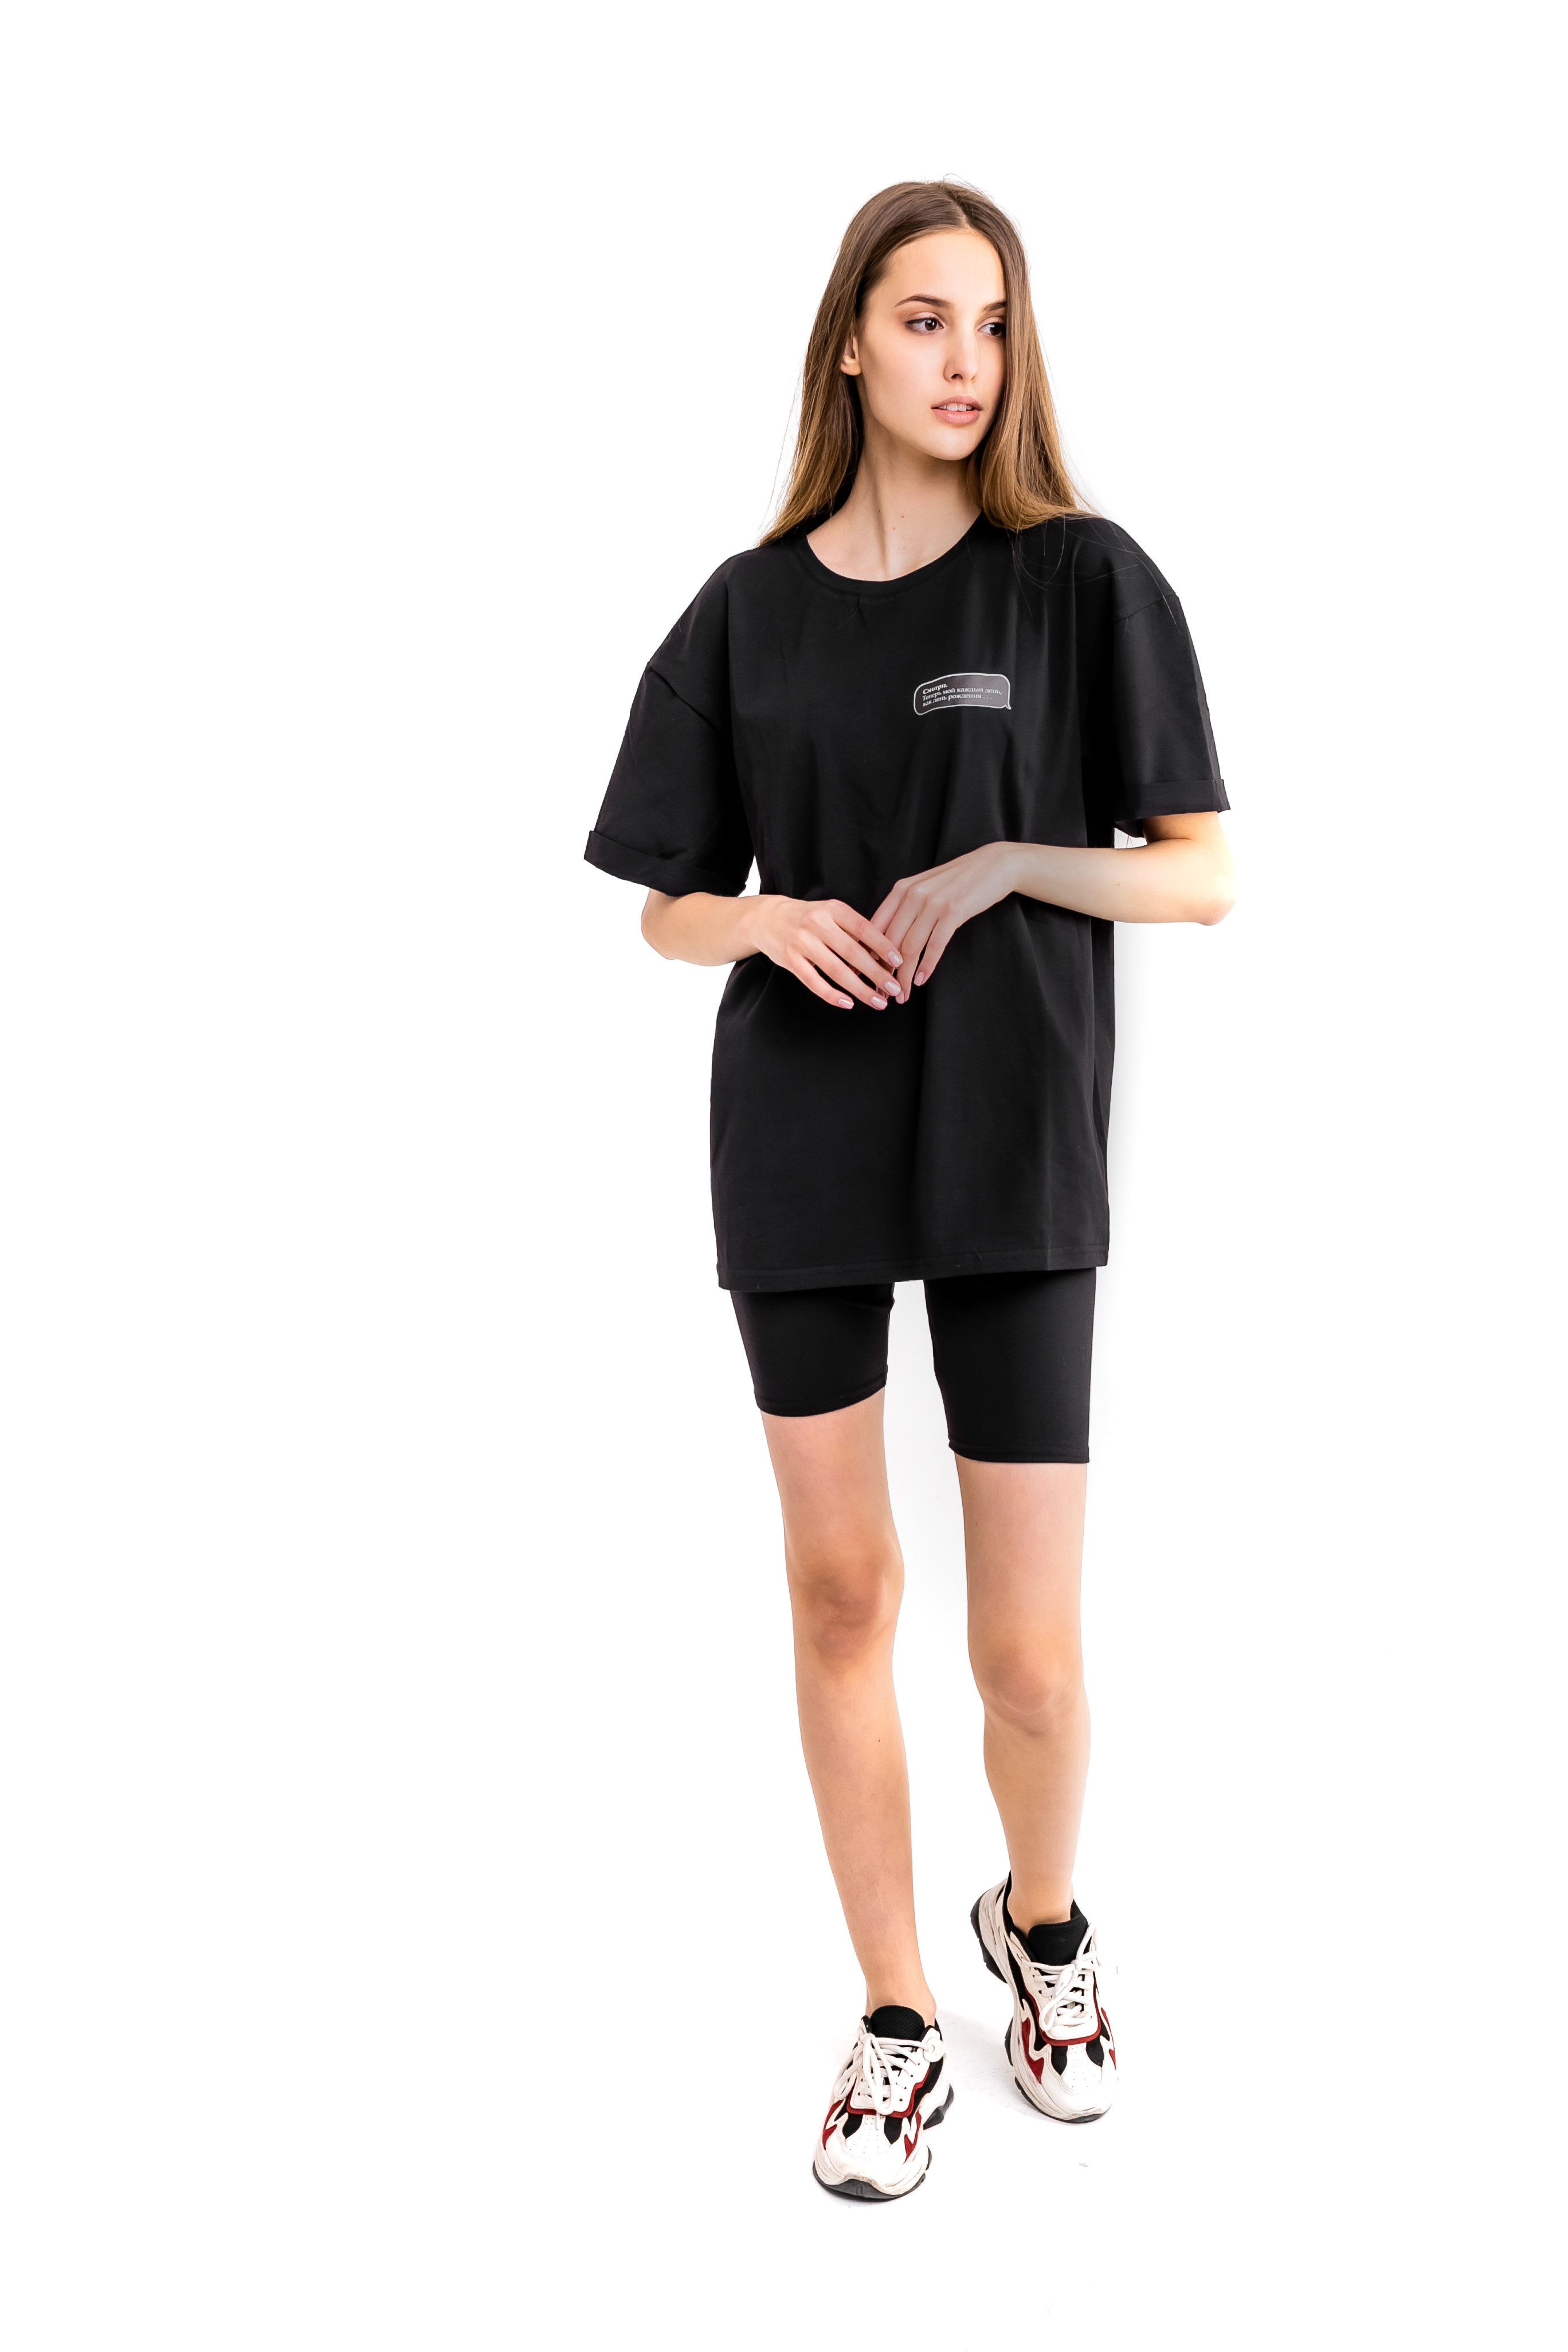 Женский костюм футболка "Смотри" + шорты Comfort  S-M Чёрный (1617019269 )